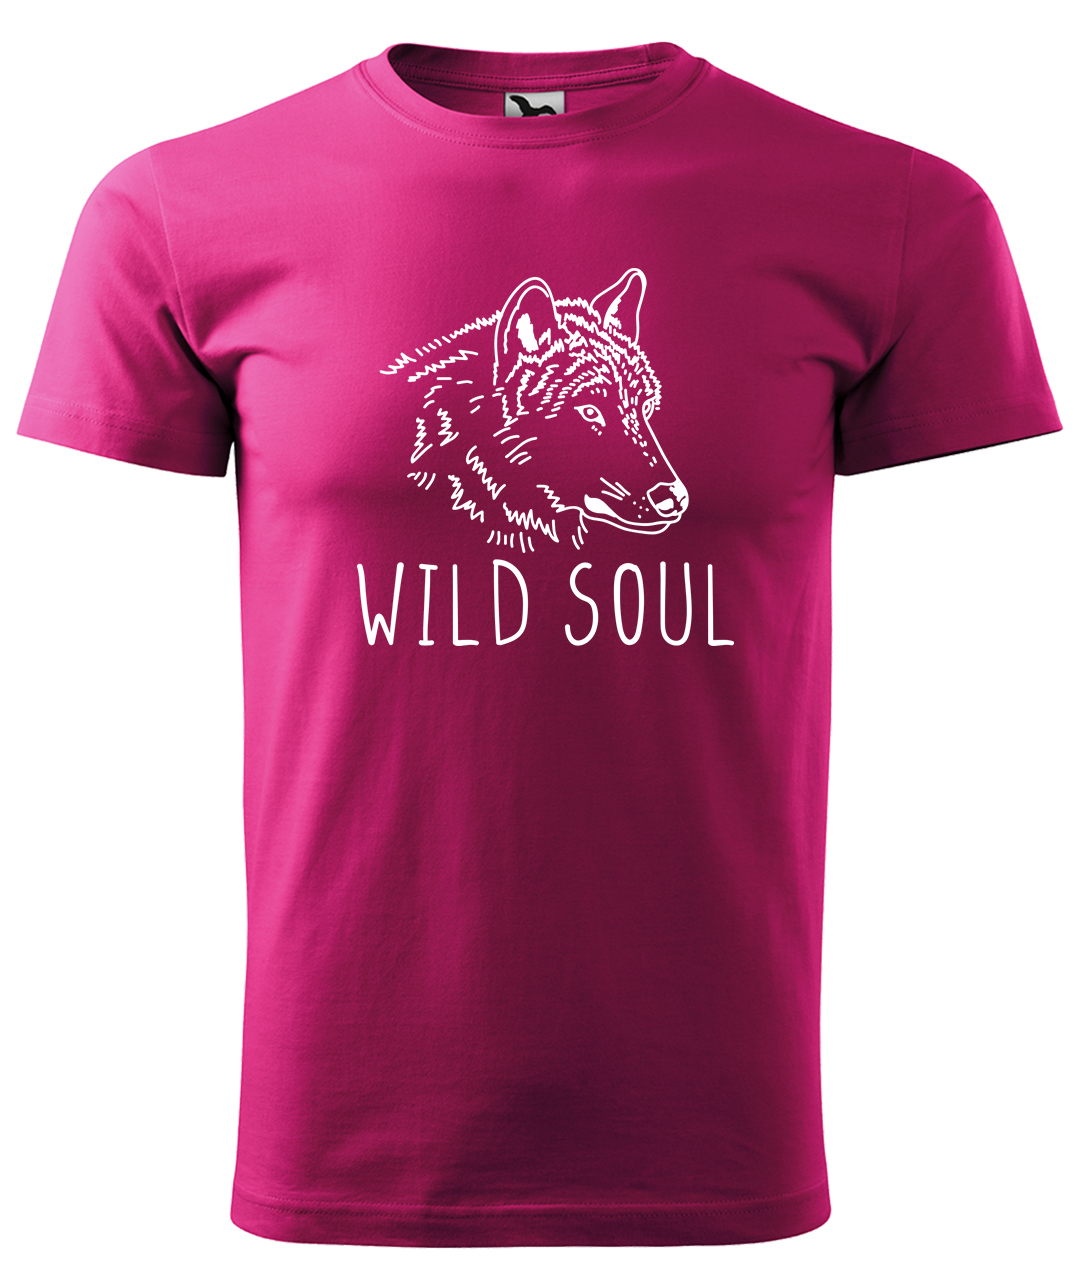 Dětské tričko s vlkem - Wild soul Velikost: 4 roky / 110 cm, Barva: Malinová (63), Délka rukávu: Krátký rukáv